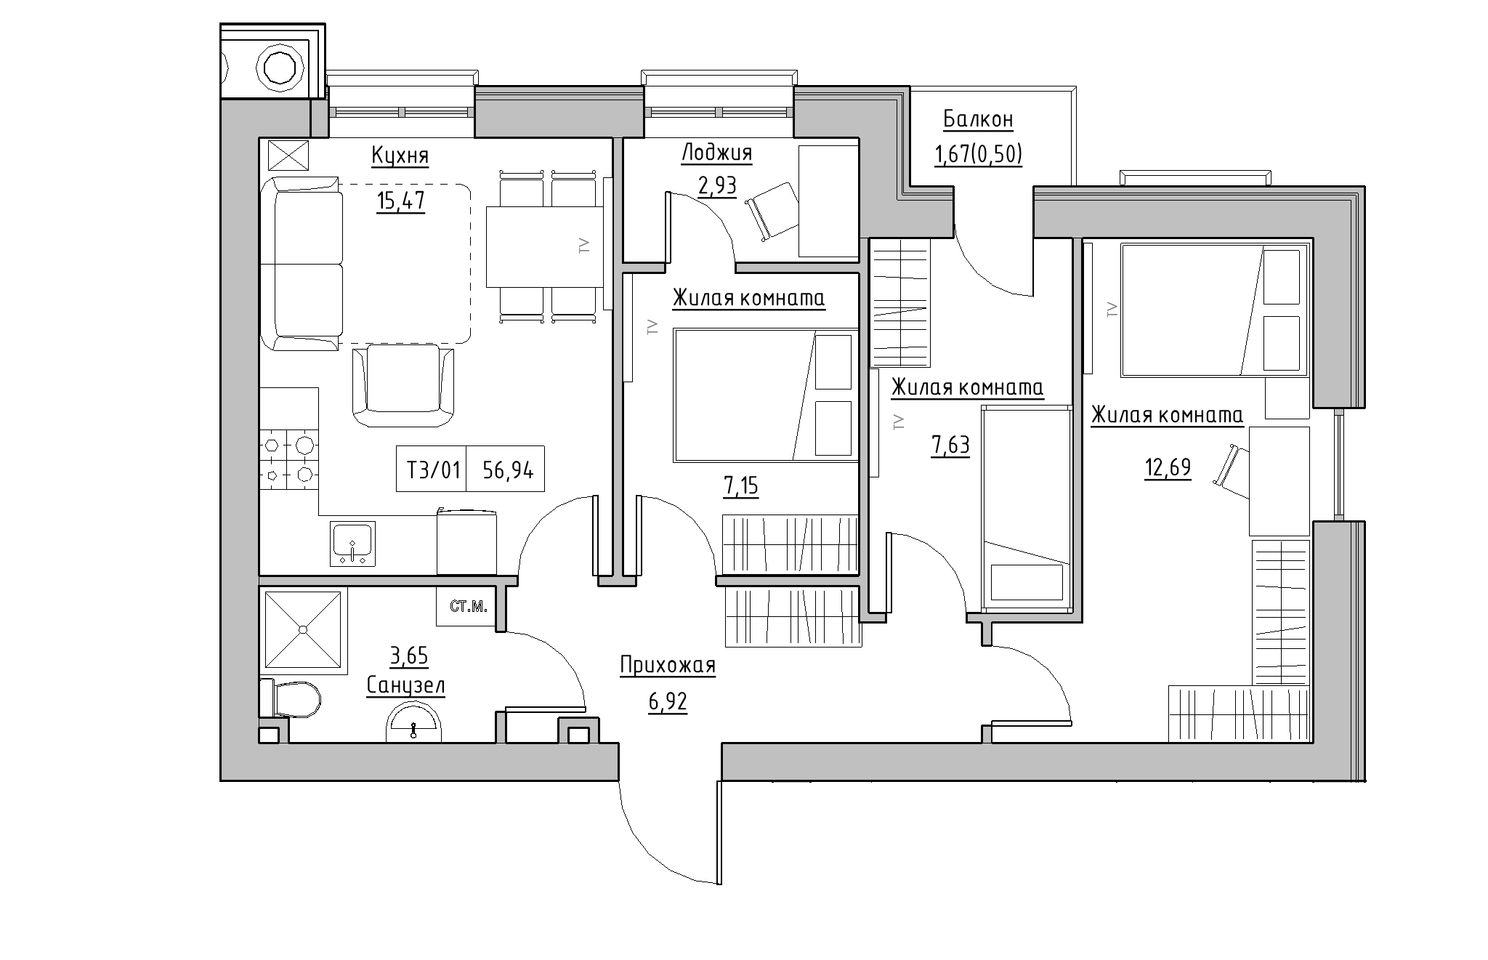 Планування 3-к квартира площею 56.94м2, KS-010-02/0008.